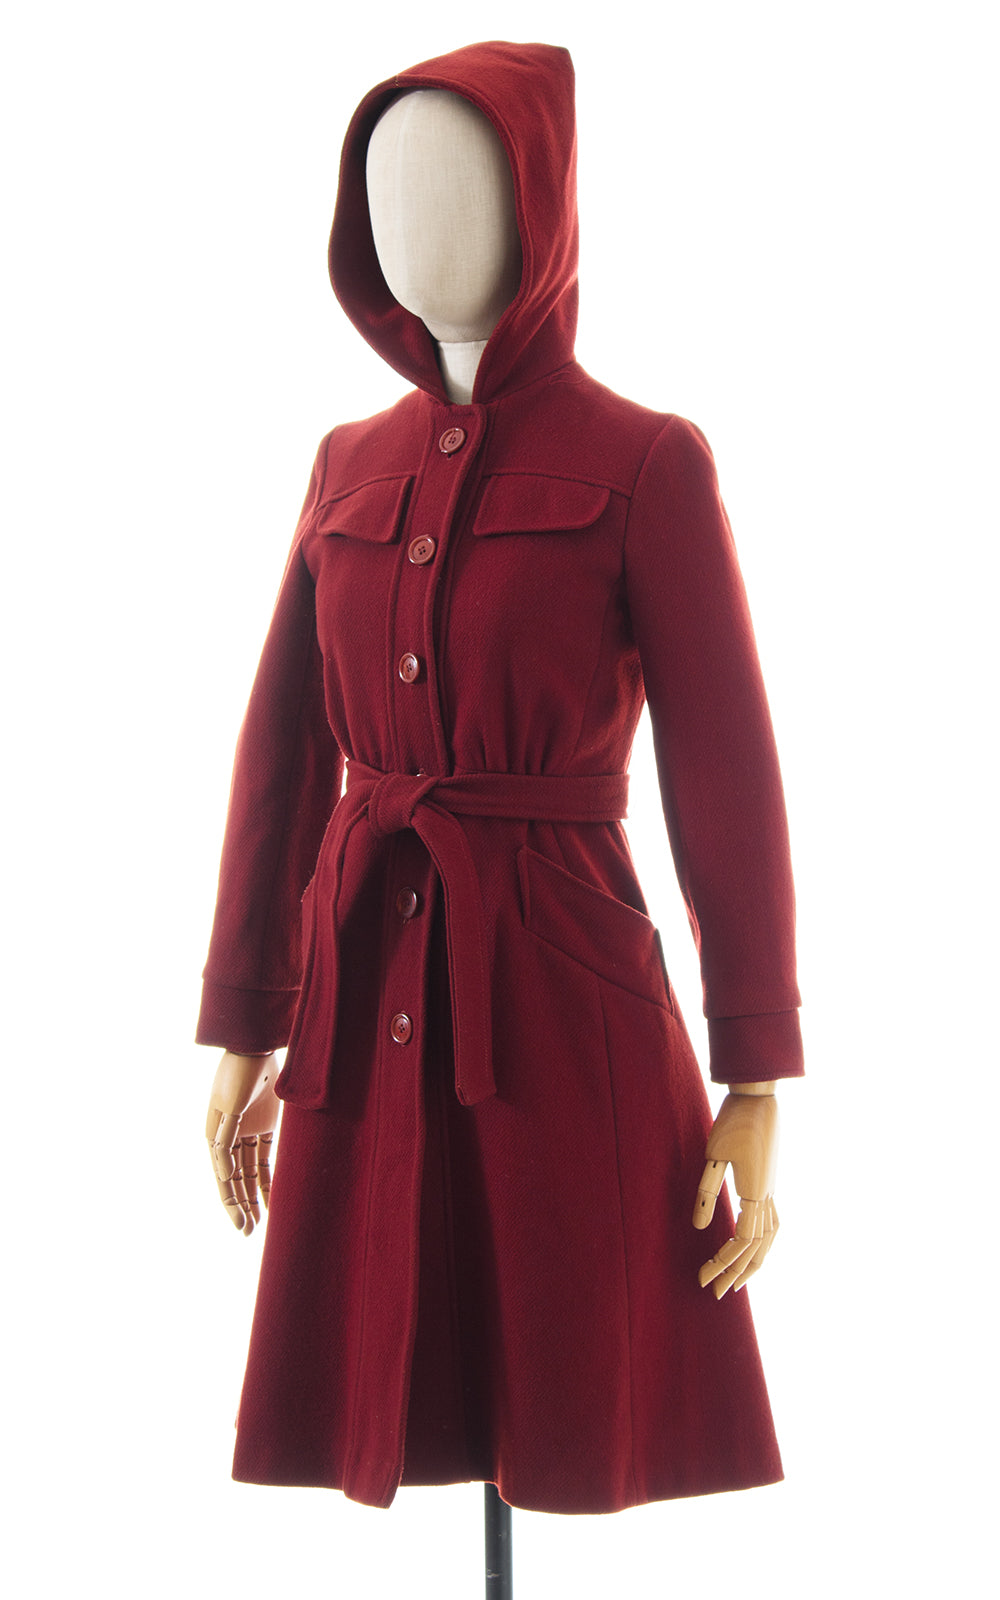 1970s Burgundy Wool Hooded Belted Princess Coat